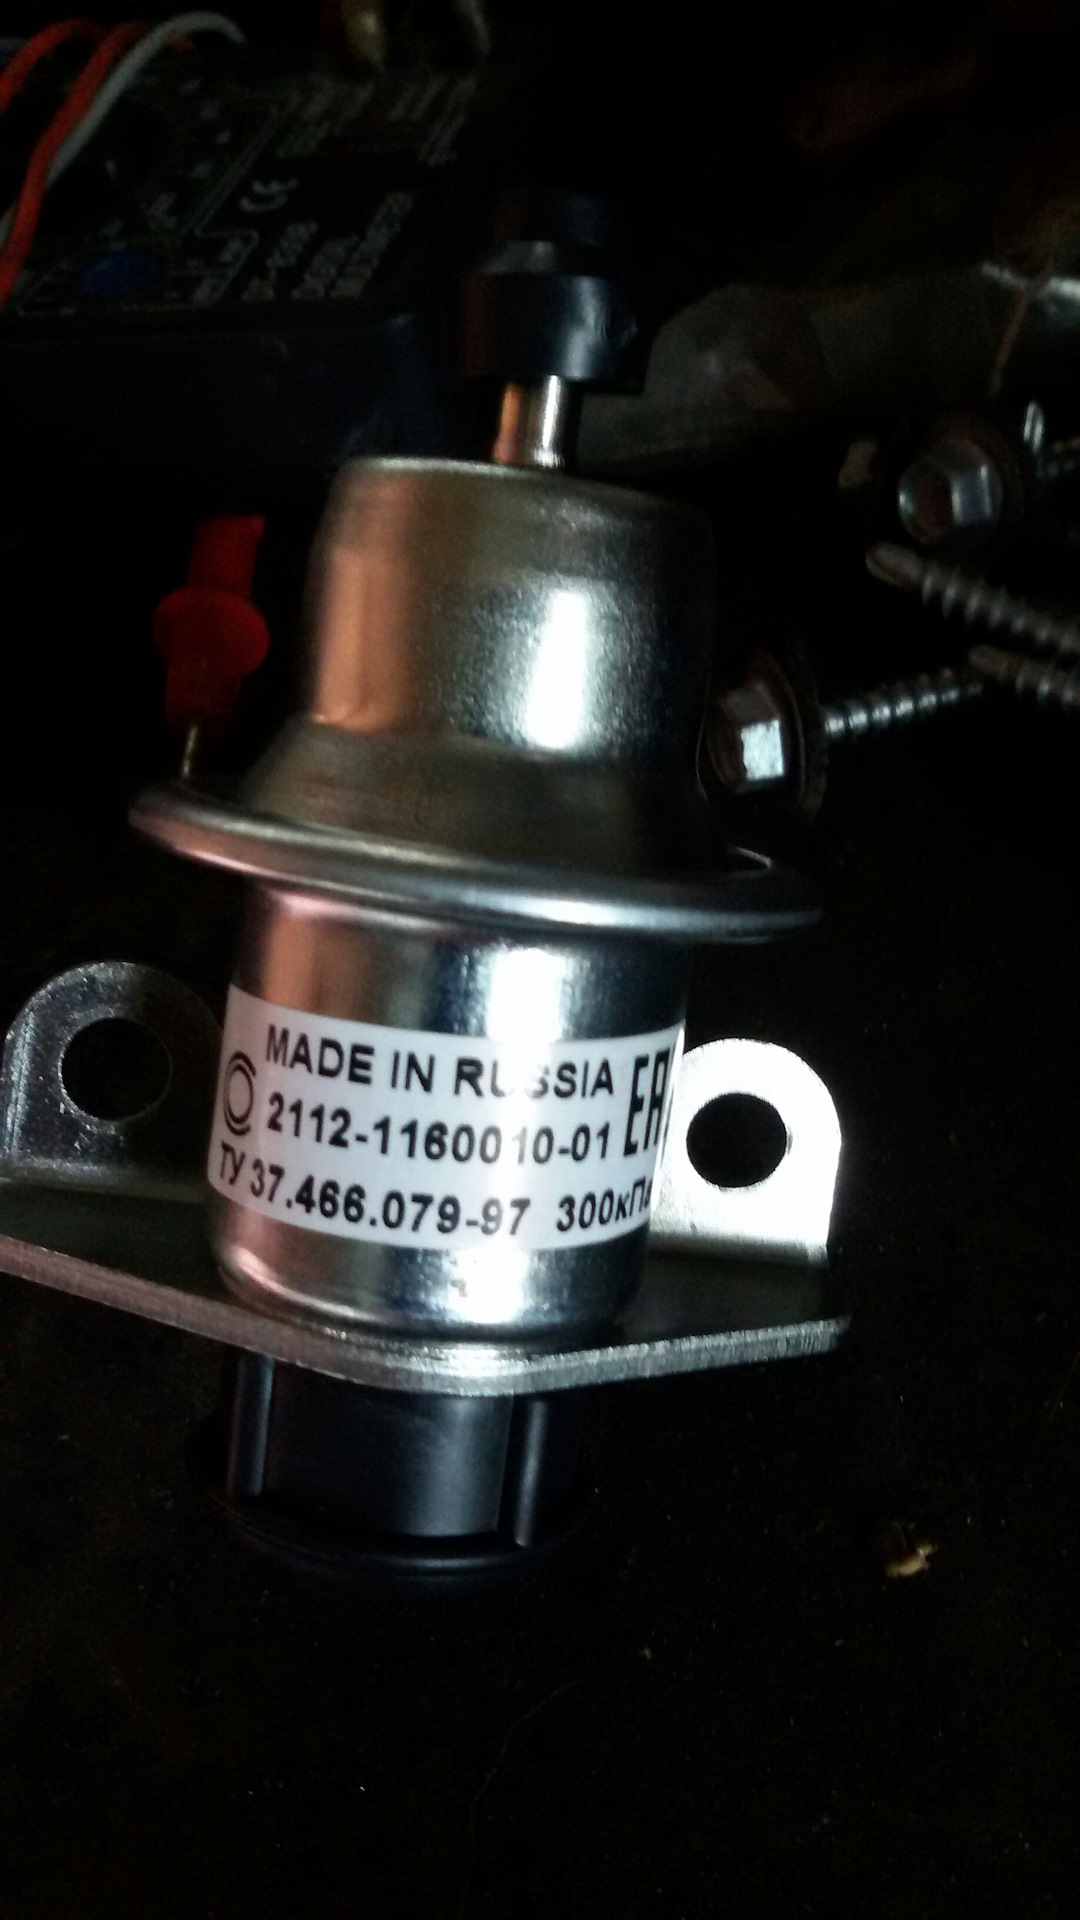 Топливный клапан ваз 2115 инжектор. Датчик регулятора давления топлива ВАЗ 2114. Обратный топливный клапан ВАЗ 2115. Обратный клапан ВАЗ 2115. Обратный клапан ВАЗ 2115 инжектор 8 клапанов.